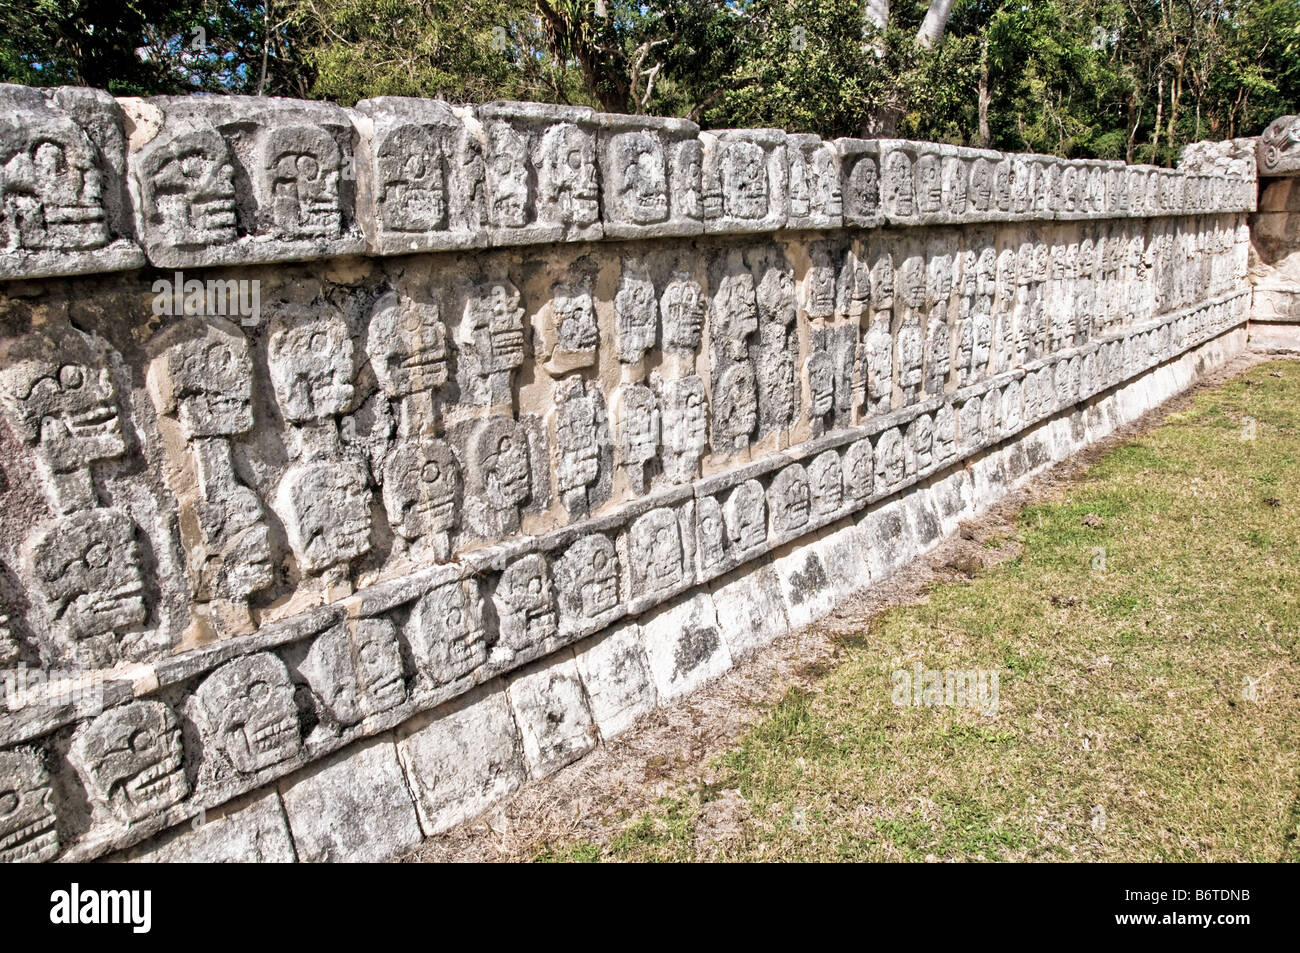 CHICHEN ITZA, Mexique - Un mur bas avec des crânes de pierre finement sculptés sur les ruines mayas anciennes de Chichen Itza, Yucatan, Mexique. Chichen Itza, situé sur la péninsule du Yucatan au Mexique, est un site archéologique important présentant la riche histoire et les connaissances scientifiques avancées de la civilisation maya antique. Il est plus connu pour la Pyramide Kukulkan, ou « El Castillo », une structure à quatre côtés avec 91 marches de chaque côté, culminant en une seule étape au sommet pour représenter les 365 jours de l'année solaire. Banque D'Images